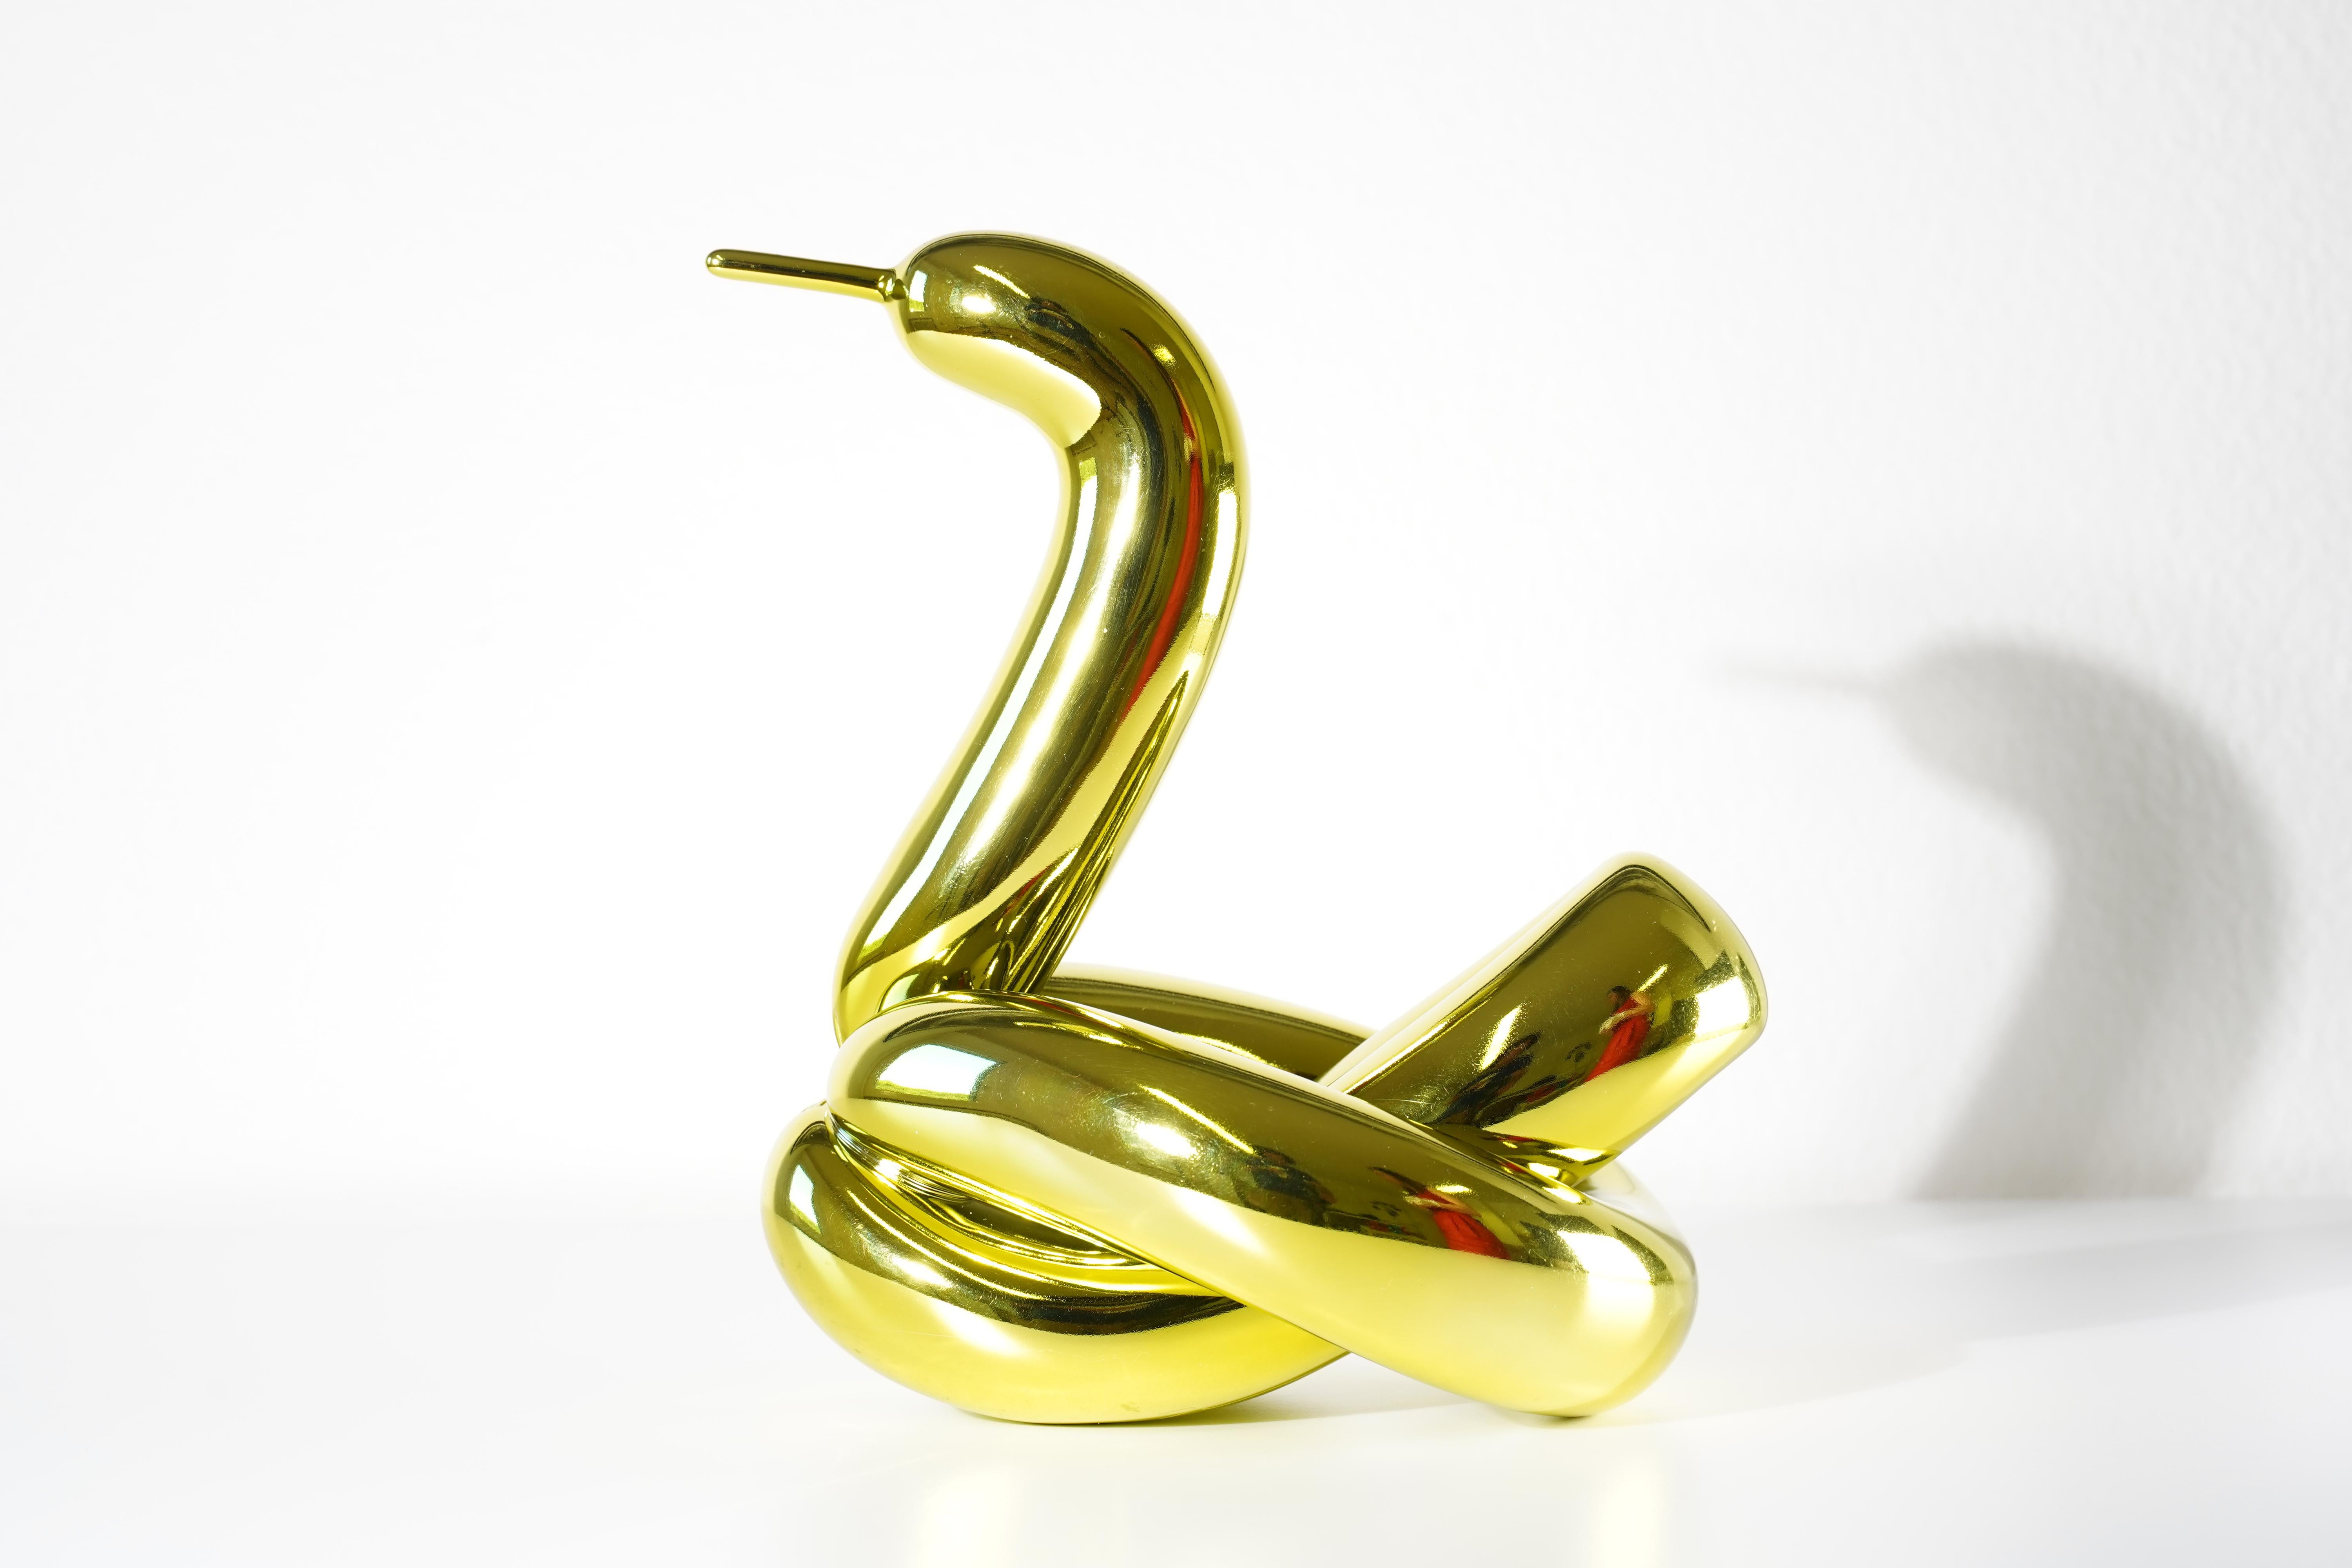 Balloon Swan (Yellow) - Jeff Koons, 21ème siècle, Contemporain, Porcelaine, Sculpture, Décoration, Edition limitée

Porcelaine de Limoges avec revêtement chromatique métallisé
Edition de 999
Signé et numéroté
En parfait état, tel qu'il a été acquis